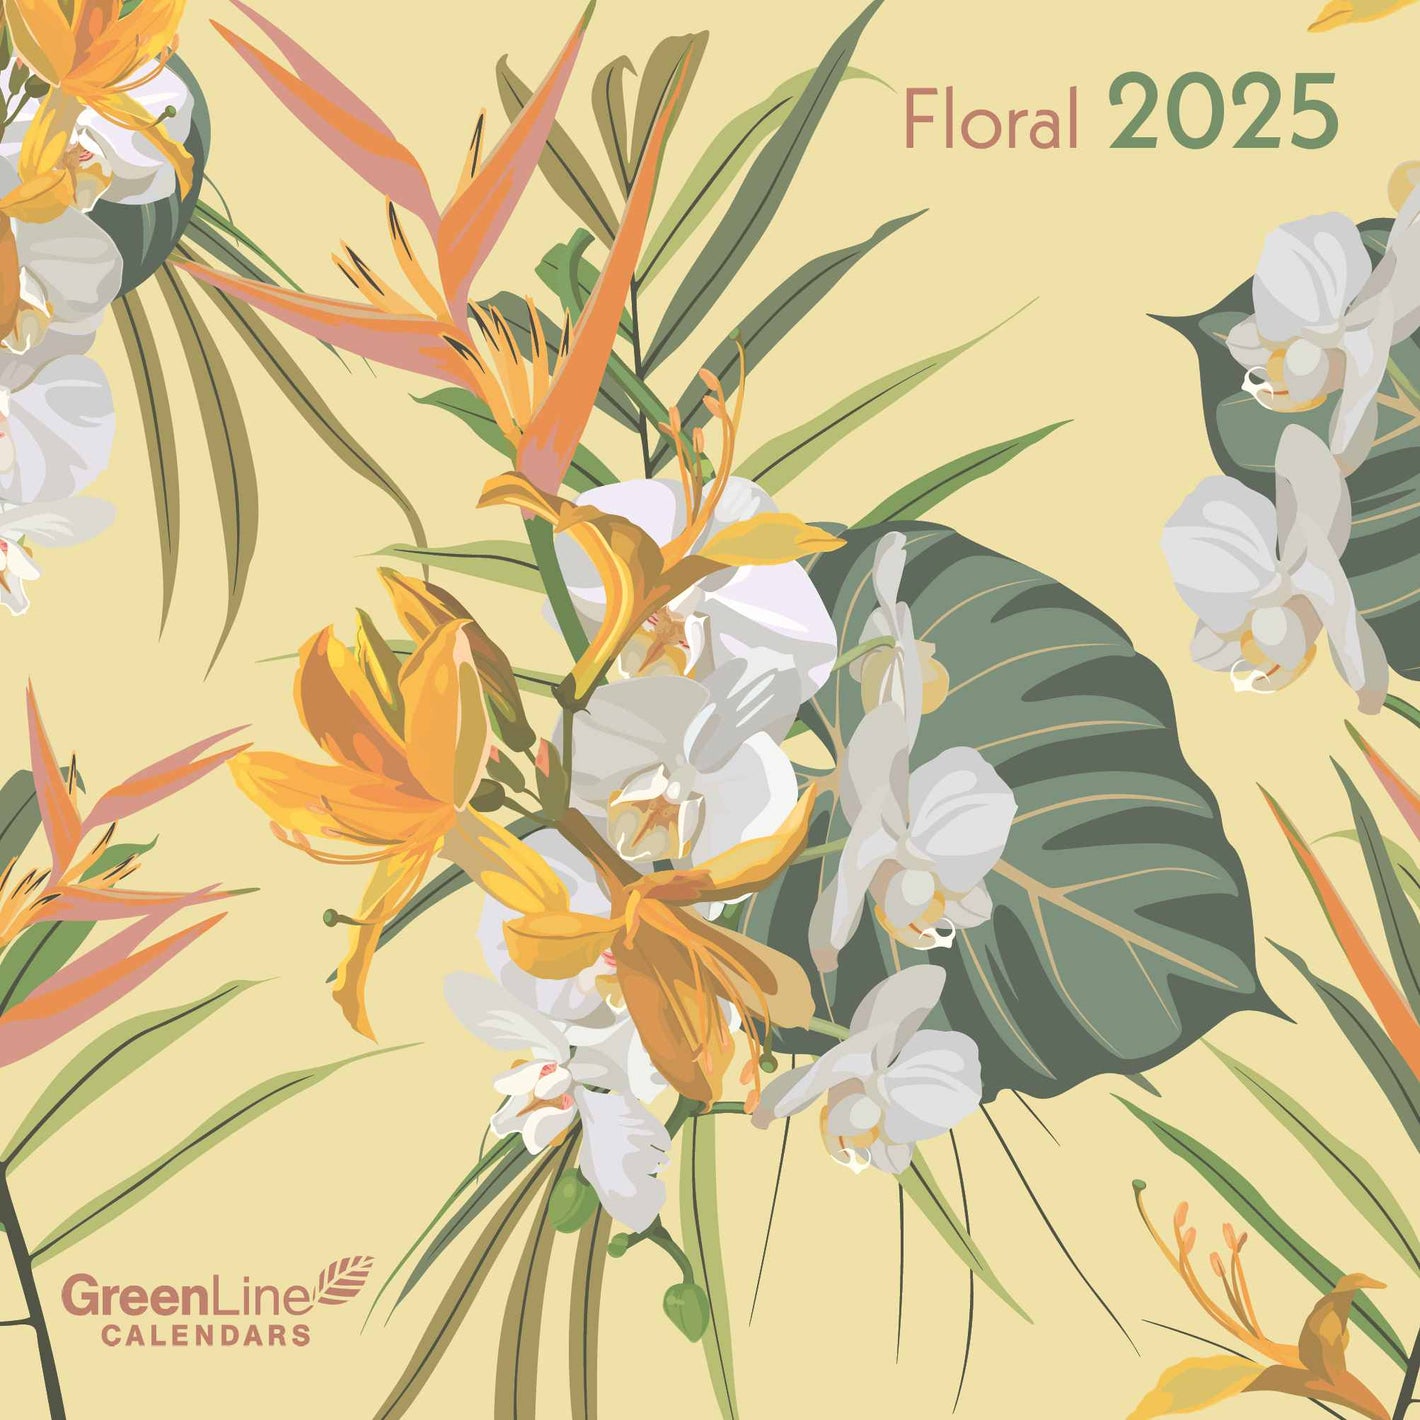 GreenLine Floral 2025